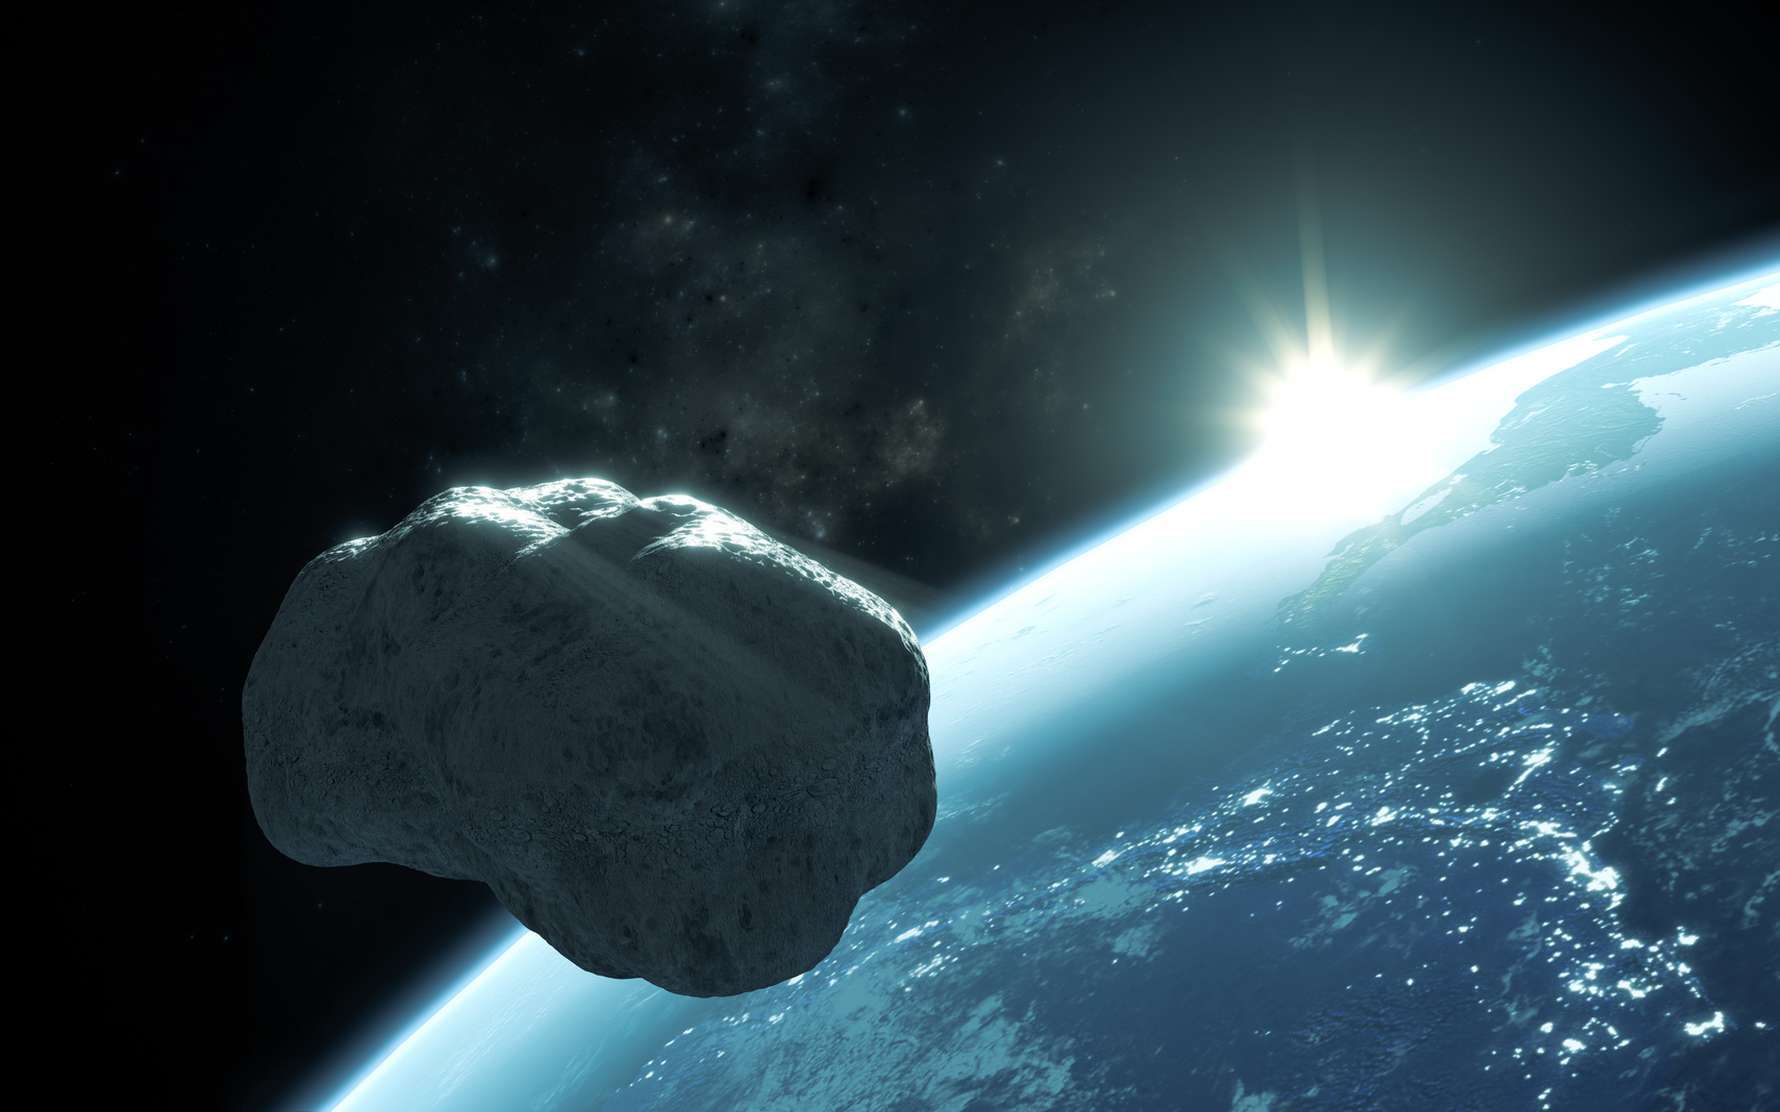 Cet astéroïde qui est passé près de la Terre est l'un des plus allongés jamais imagé